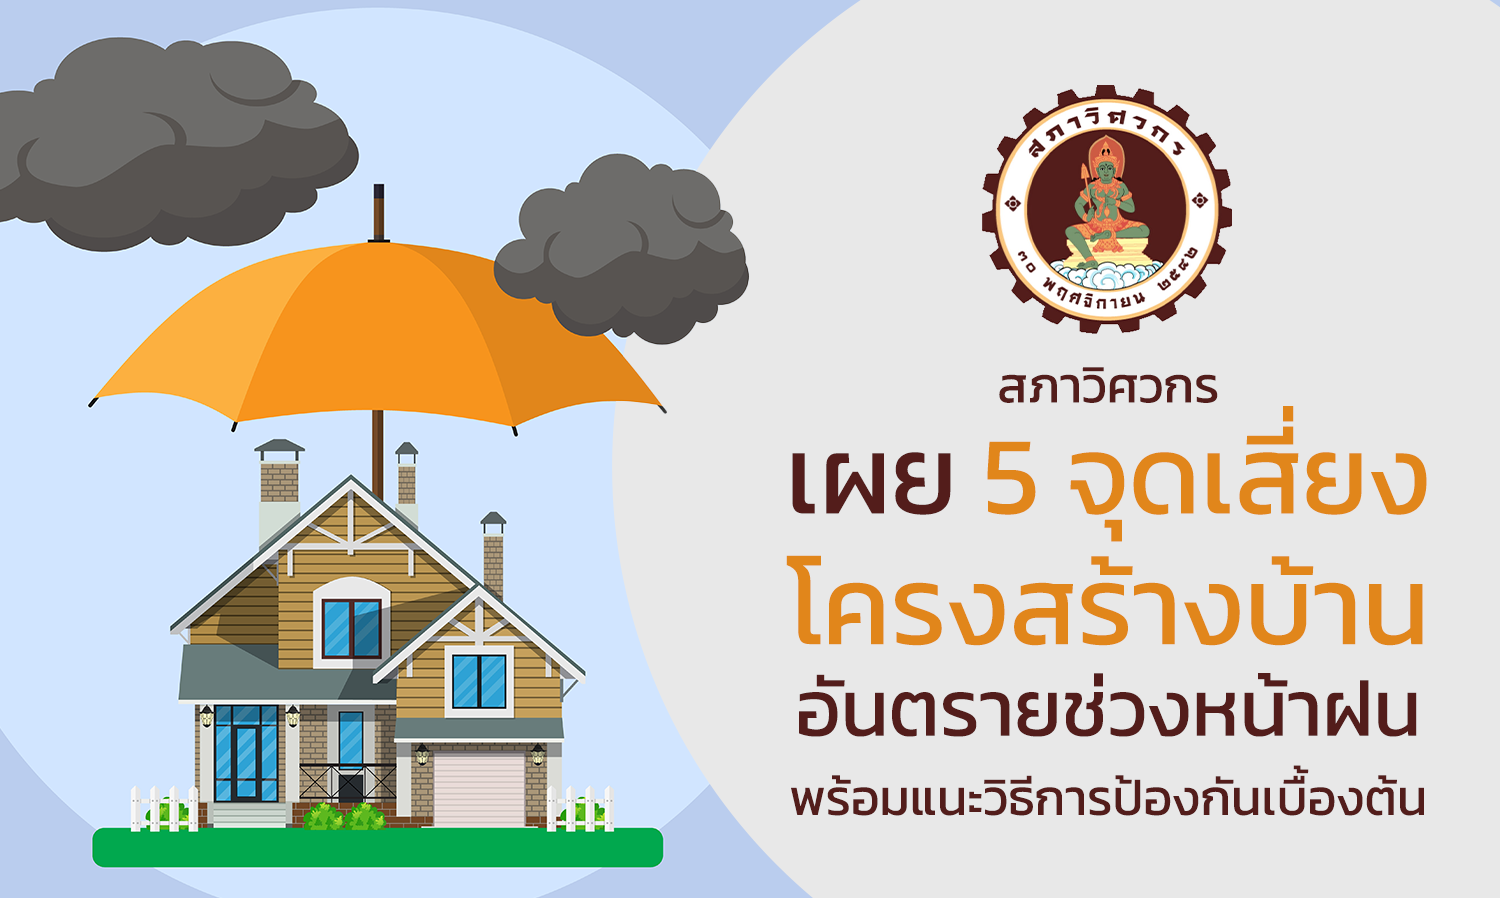 สภาวิศวกร เผย 5 จุดเสี่ยง โครงสร้างบ้านอันตรายช่วงหน้าฝน  พร้อมแนะวิธีการป้องกันเบื้องต้น